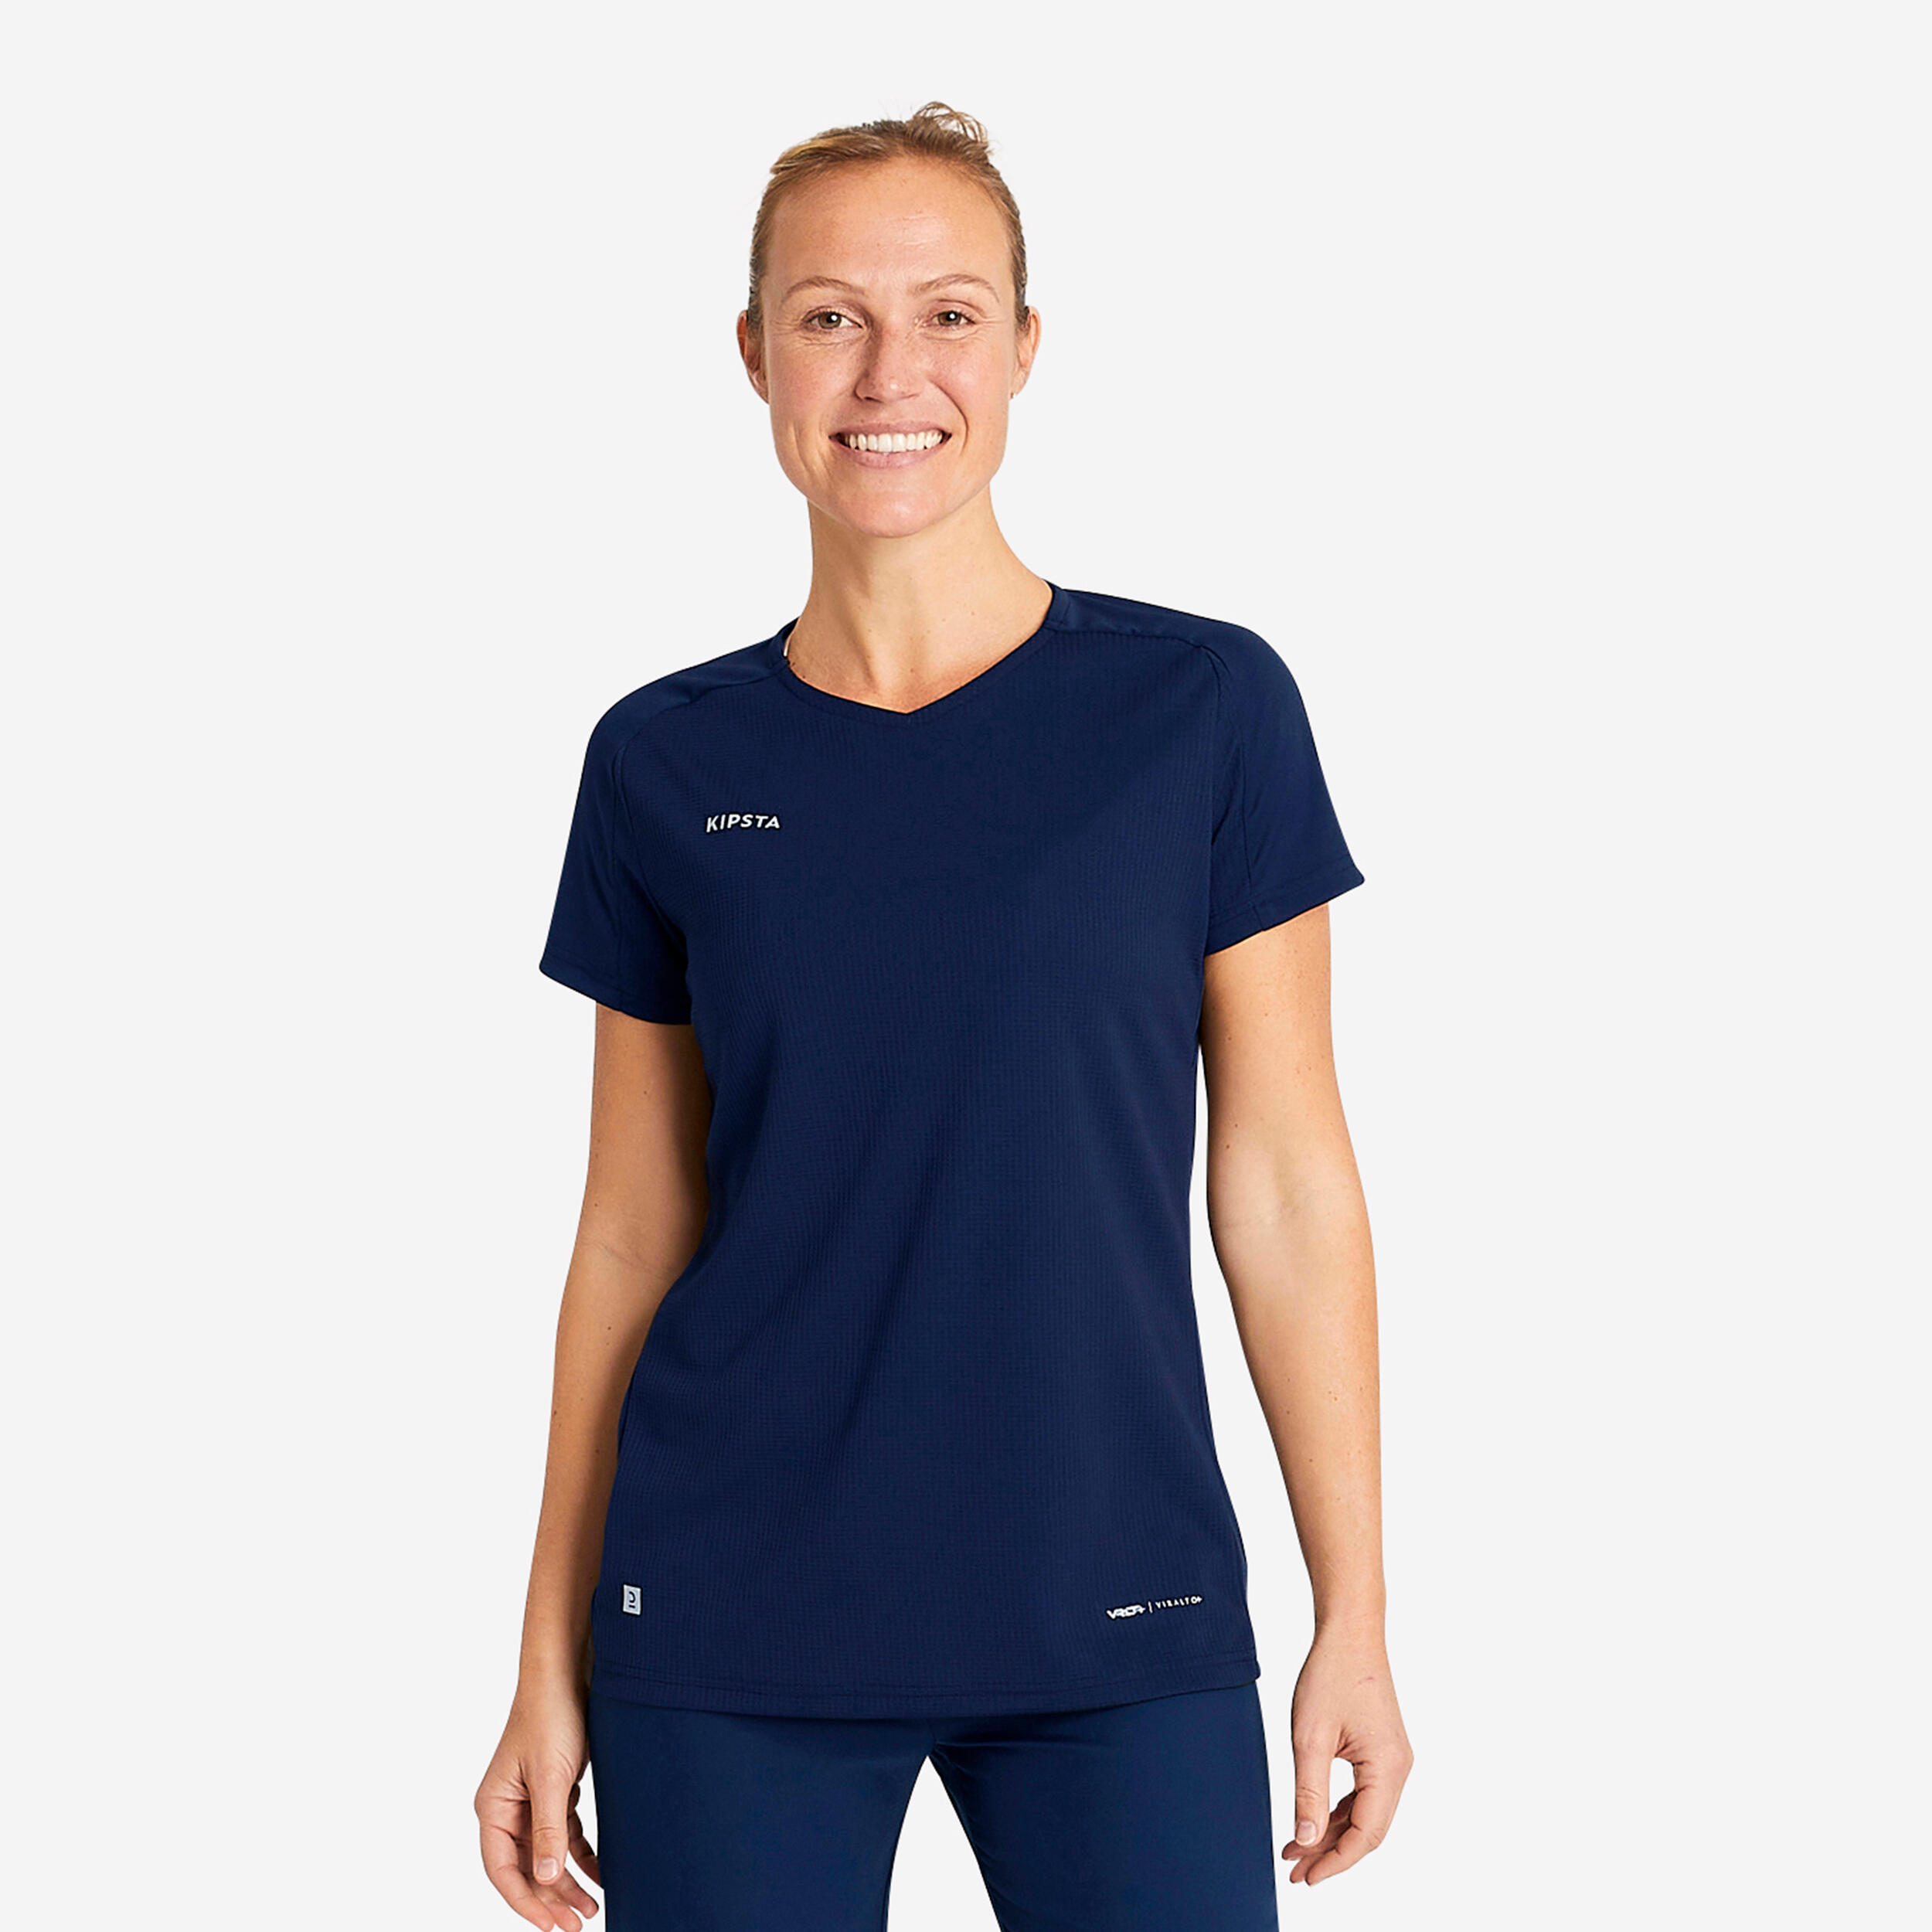 Women's Football Shirt Viralto - Plain Navy 5/10